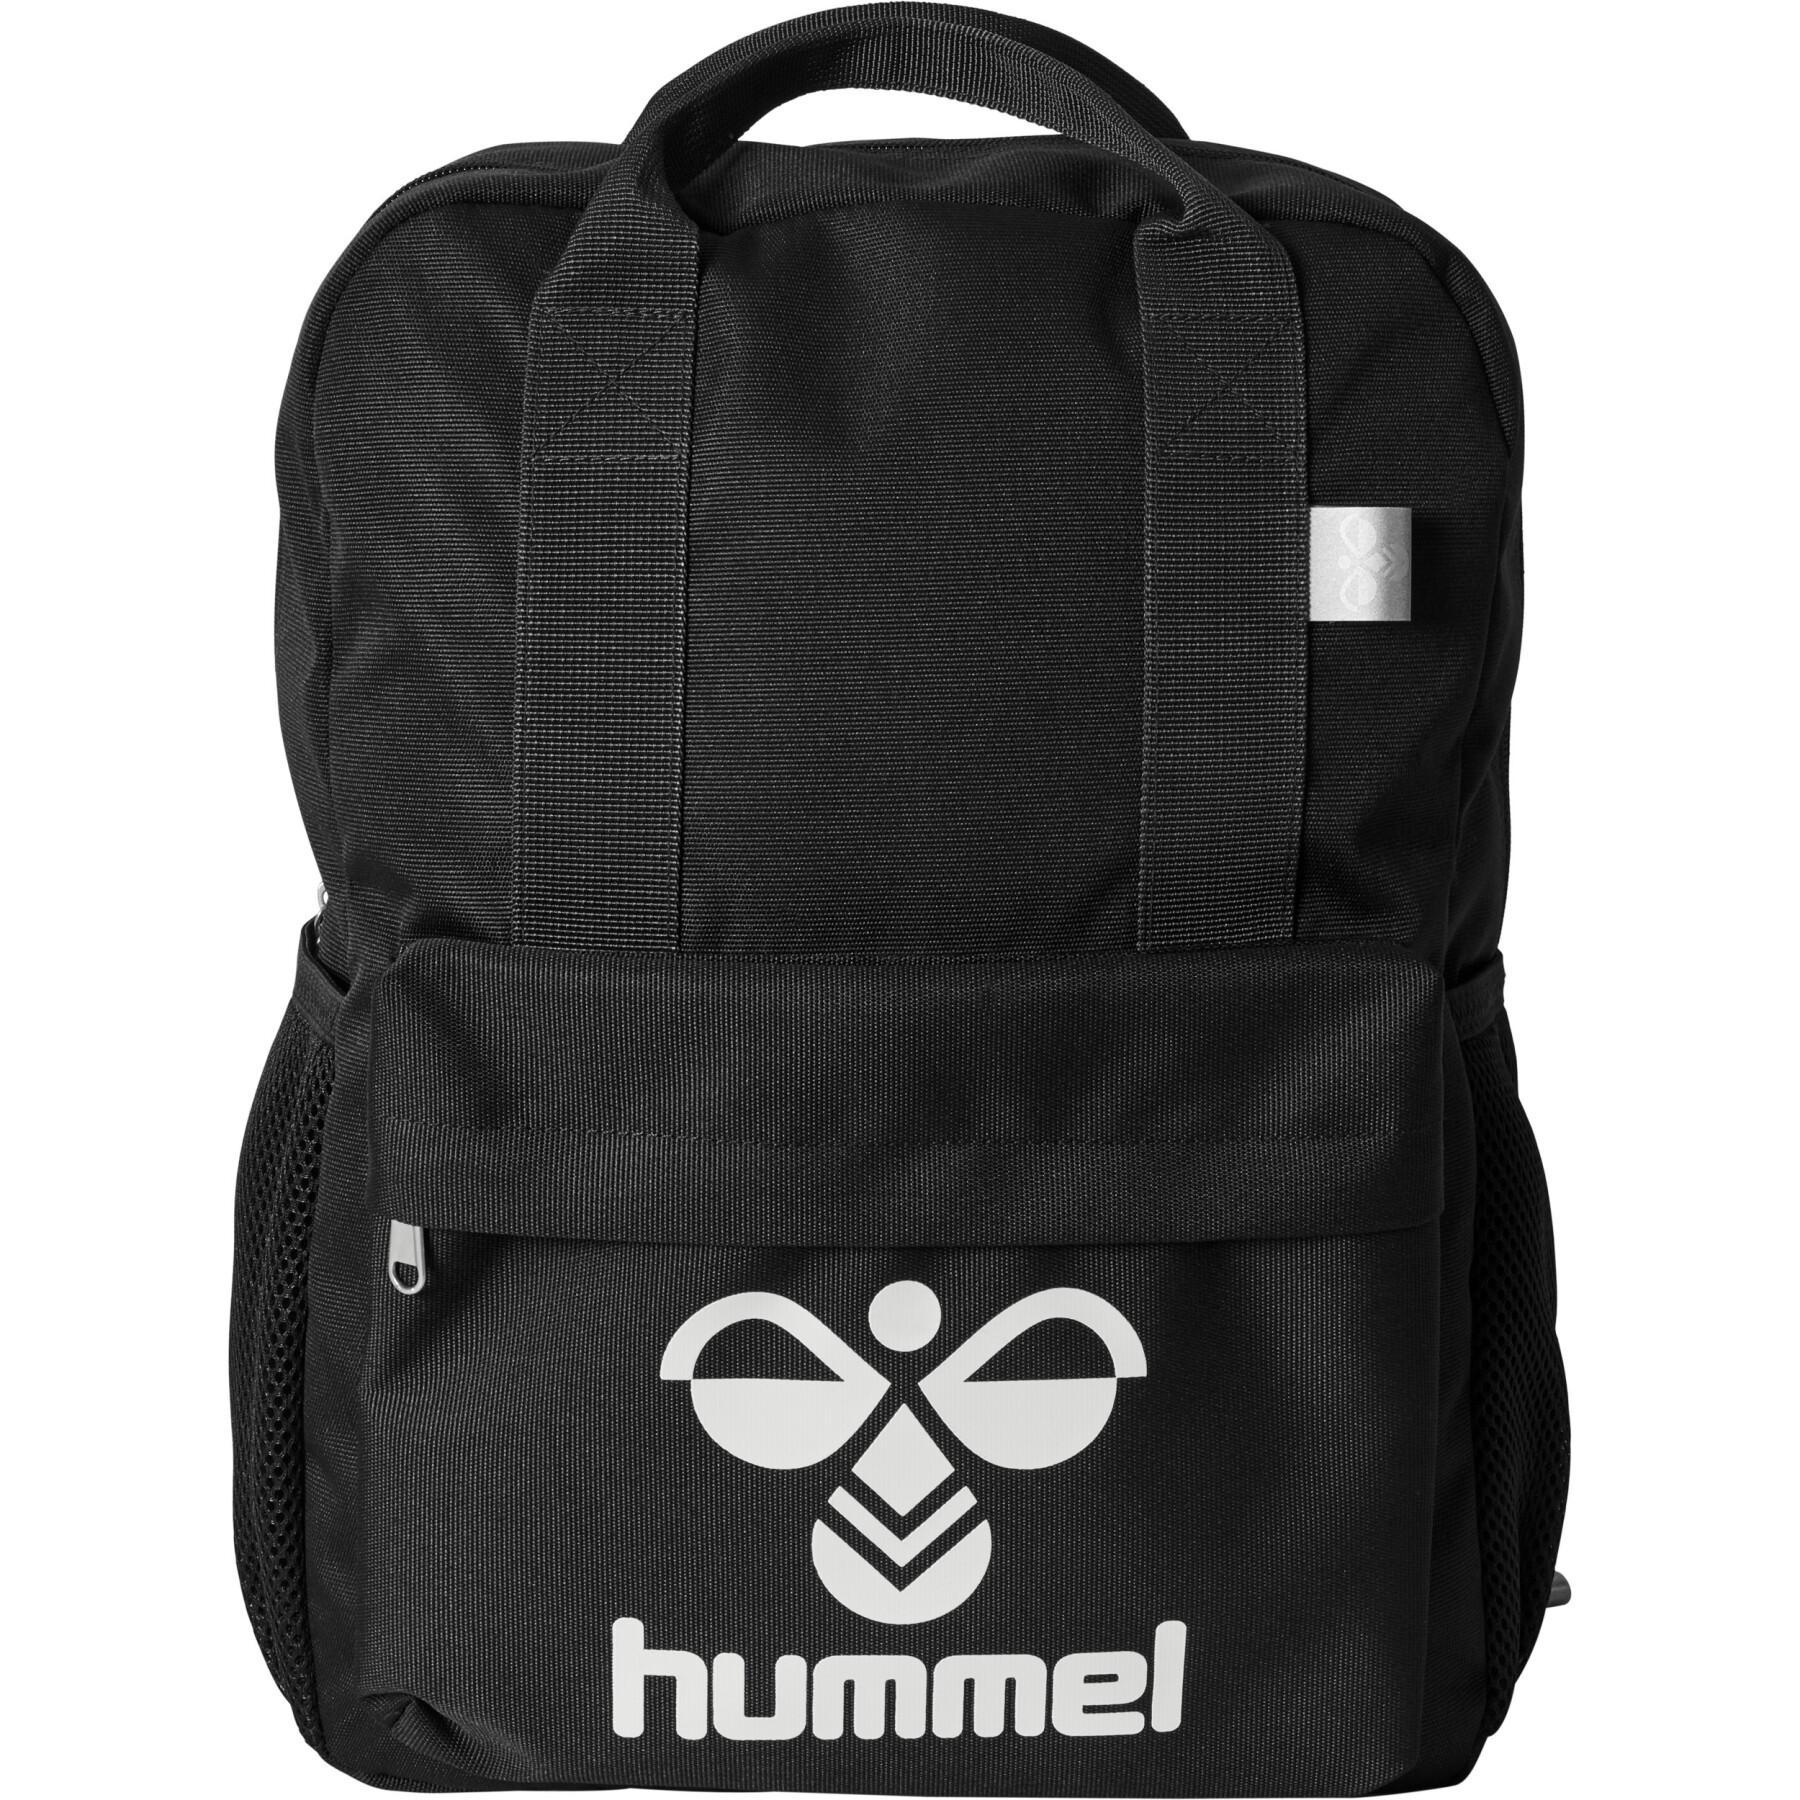 Inhalere Numerisk Diligence Children's backpack Hummel Jazz 14.7L - Backpack - Luggage - Accessories